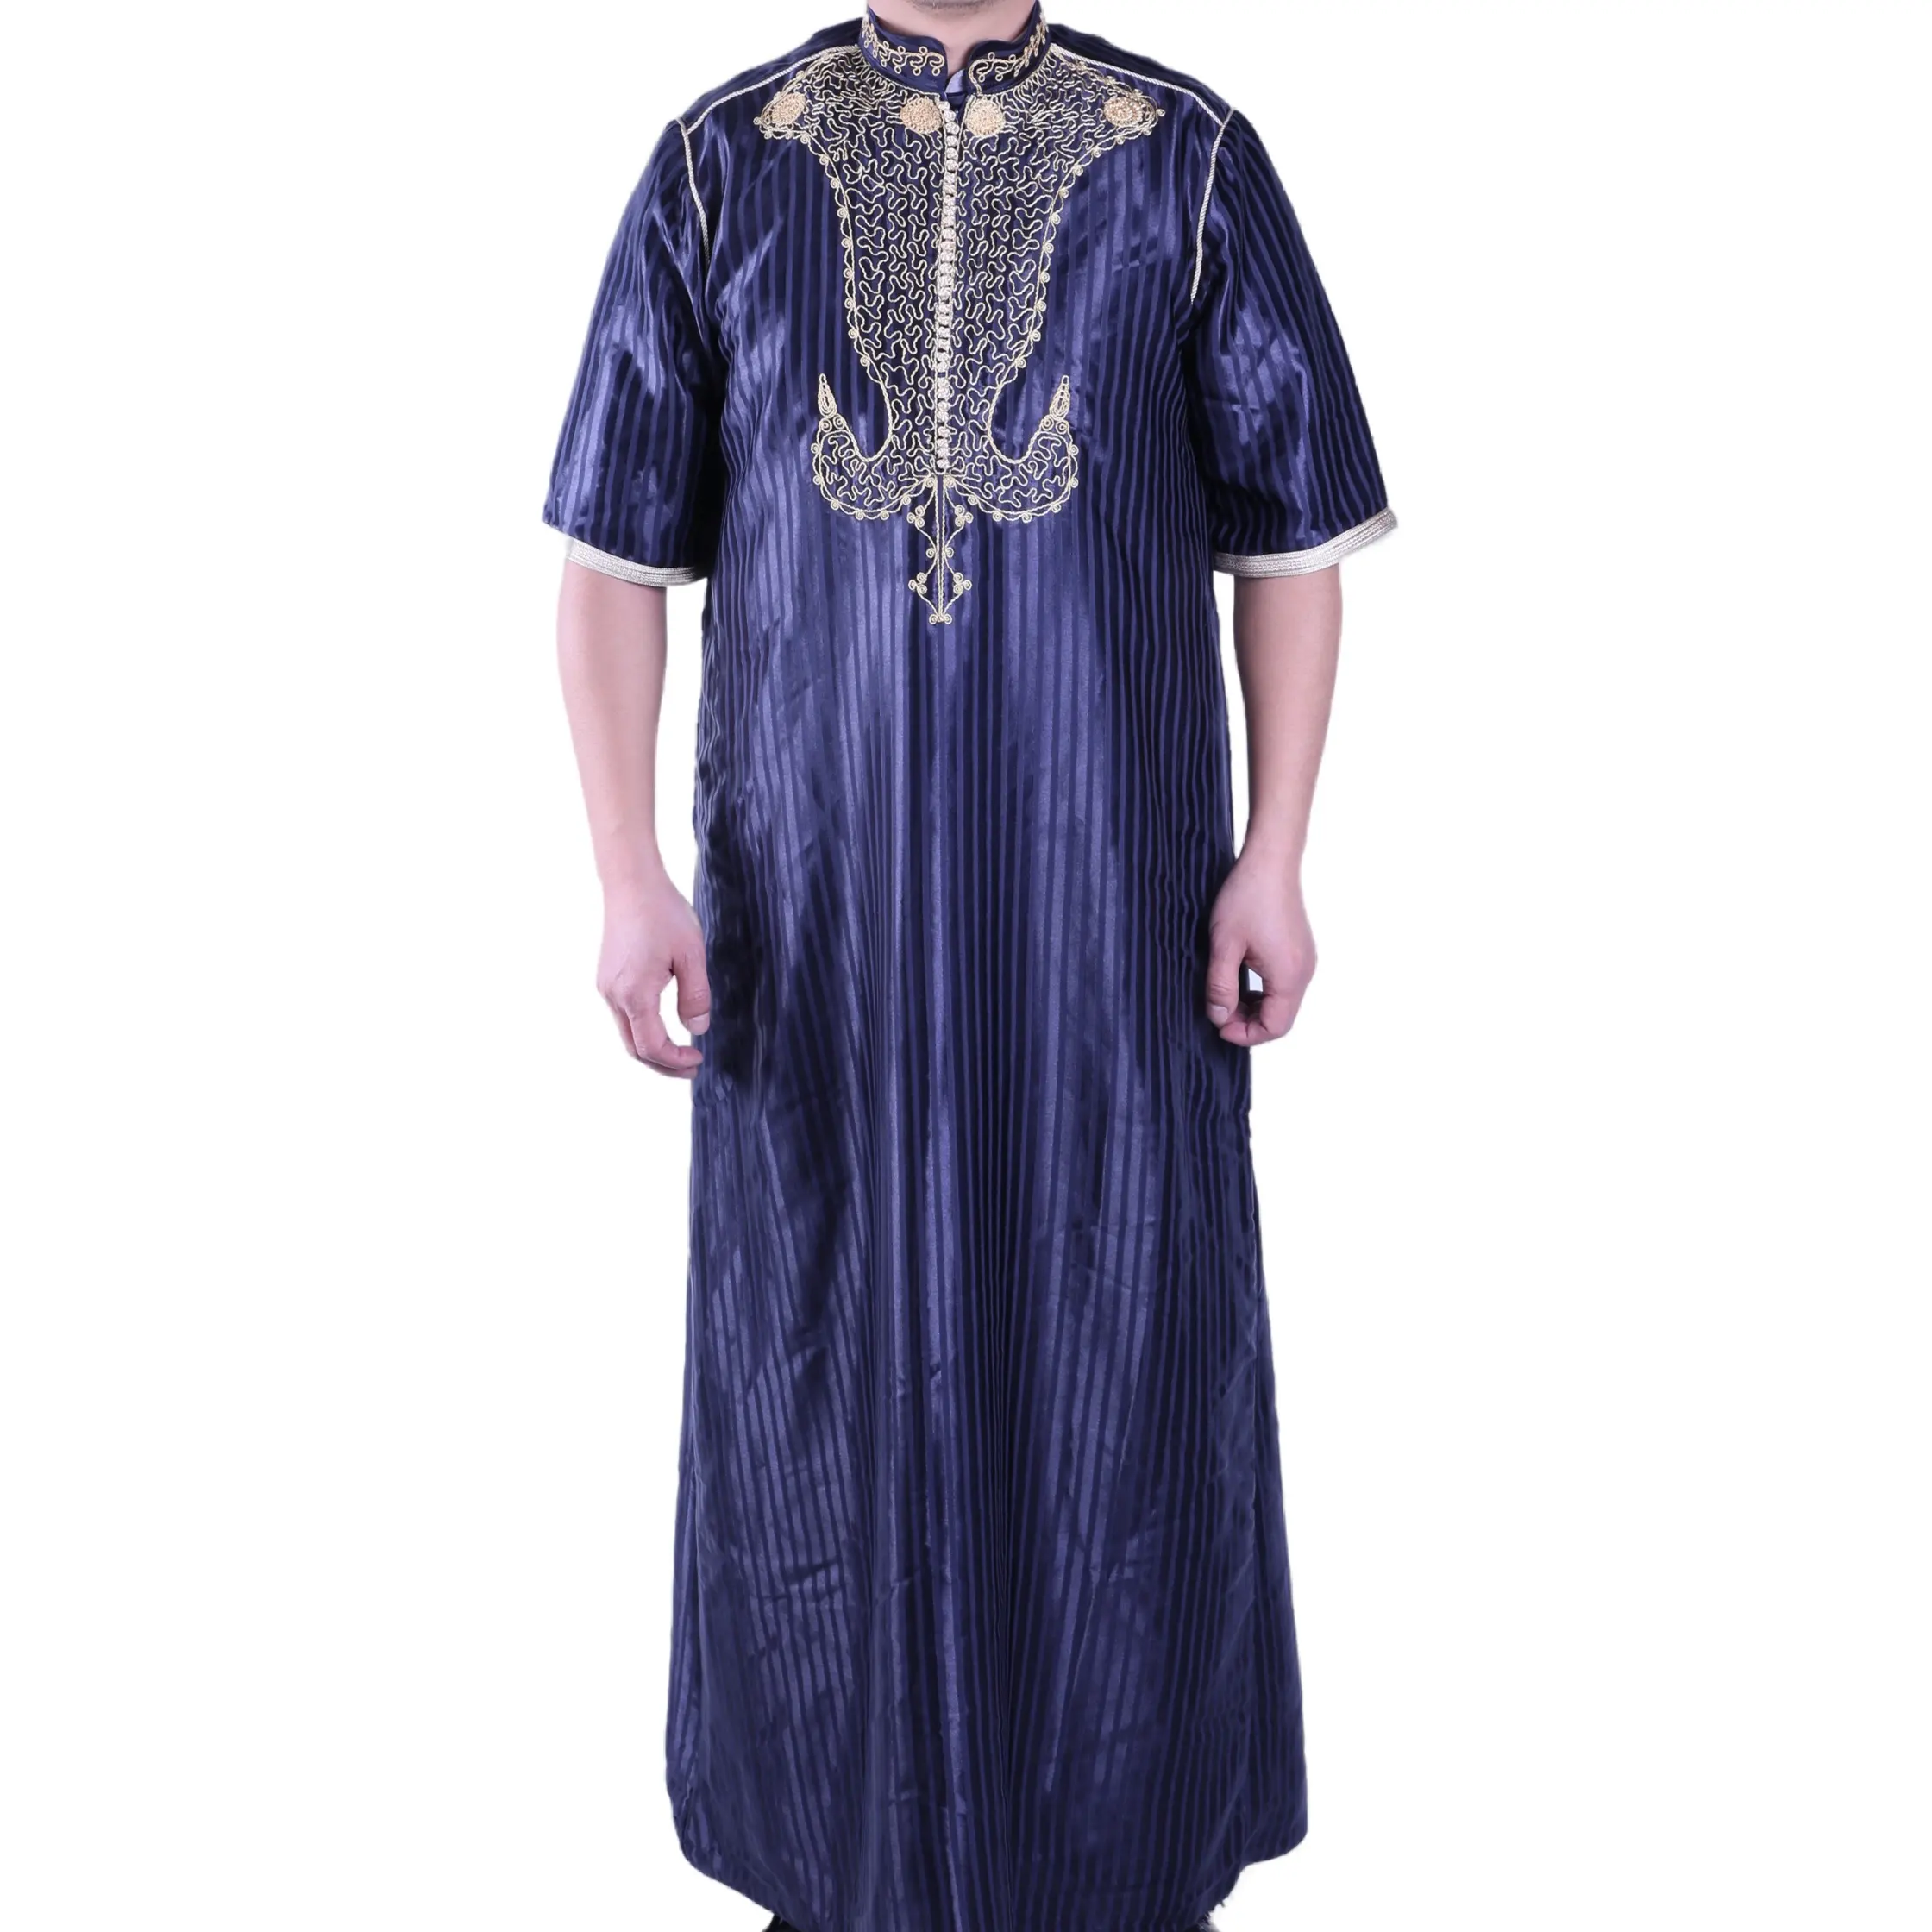 सऊदी शैली का लबादा गर्म बिक्री उत्पाद दुबई ठोस रंग दैनिक मुस्लिम कपड़े